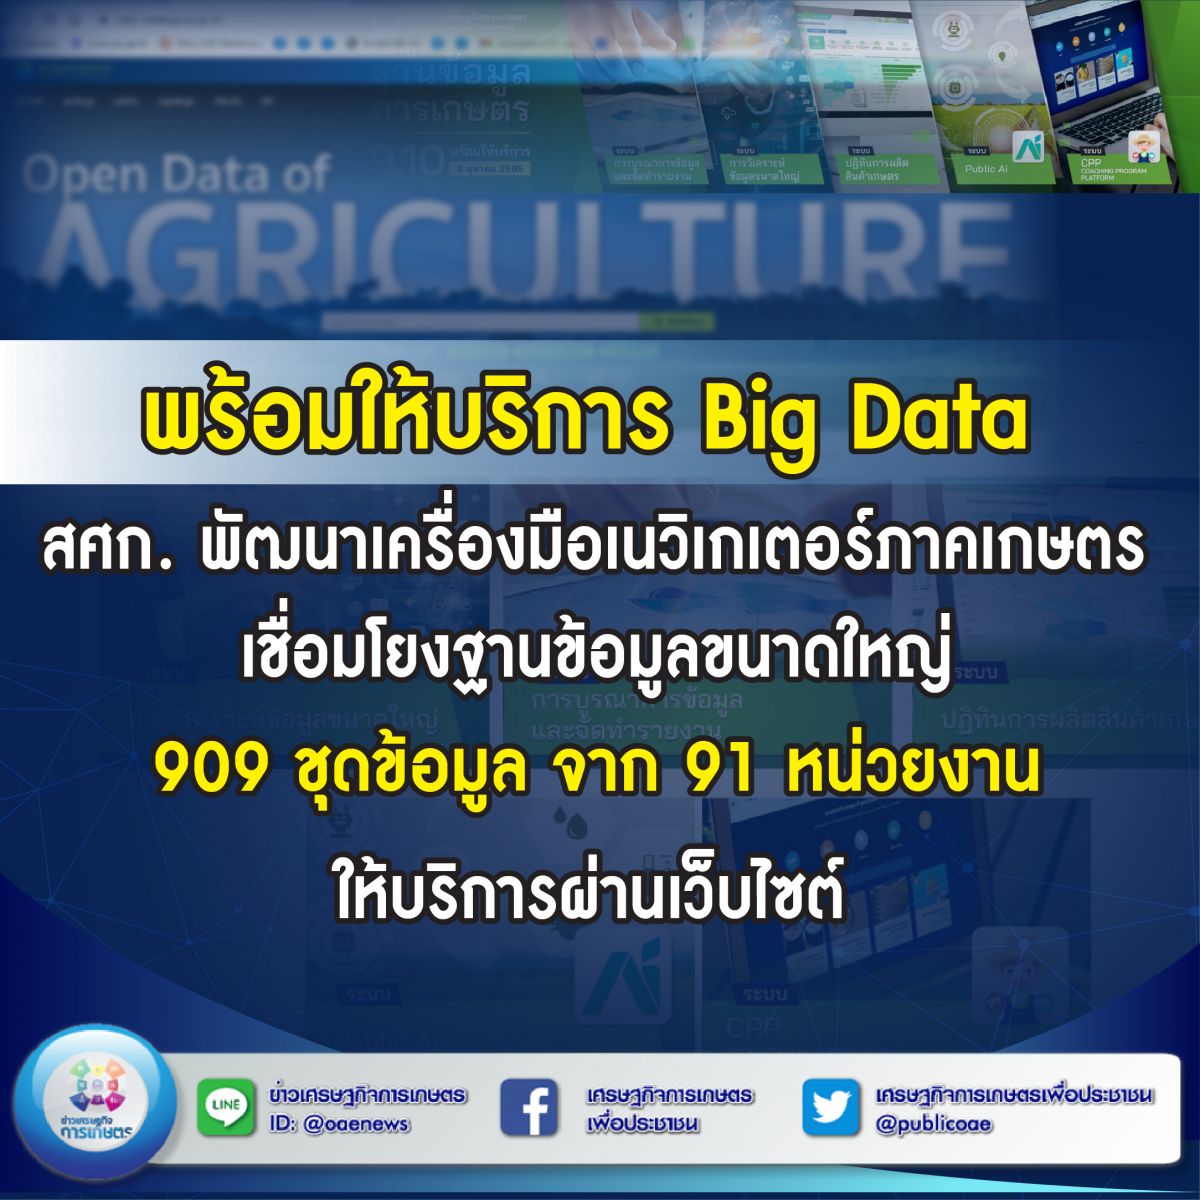 พร้อมให้บริการ Big Data สศก. พัฒนาเครื่องมือเนวิเกเตอร์ภาคเกษตร  เชื่อมโยงฐานข้อมูลขนาดใหญ่ 909 ชุดข้อมูล จาก 91 หน่วยงาน ให้บริการผ่านเว็บไซต์ 